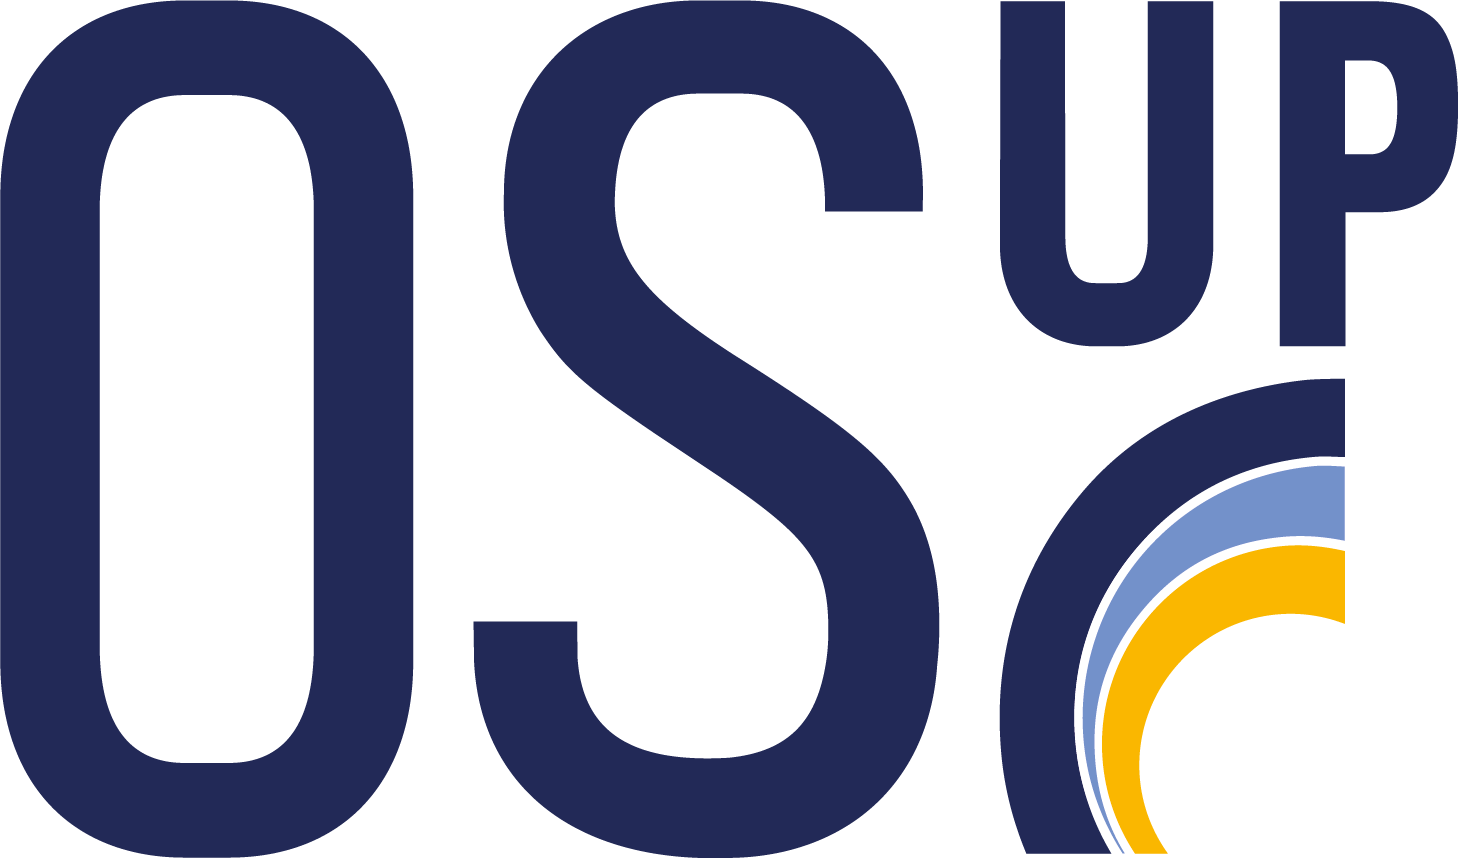 Speed-meeting logo